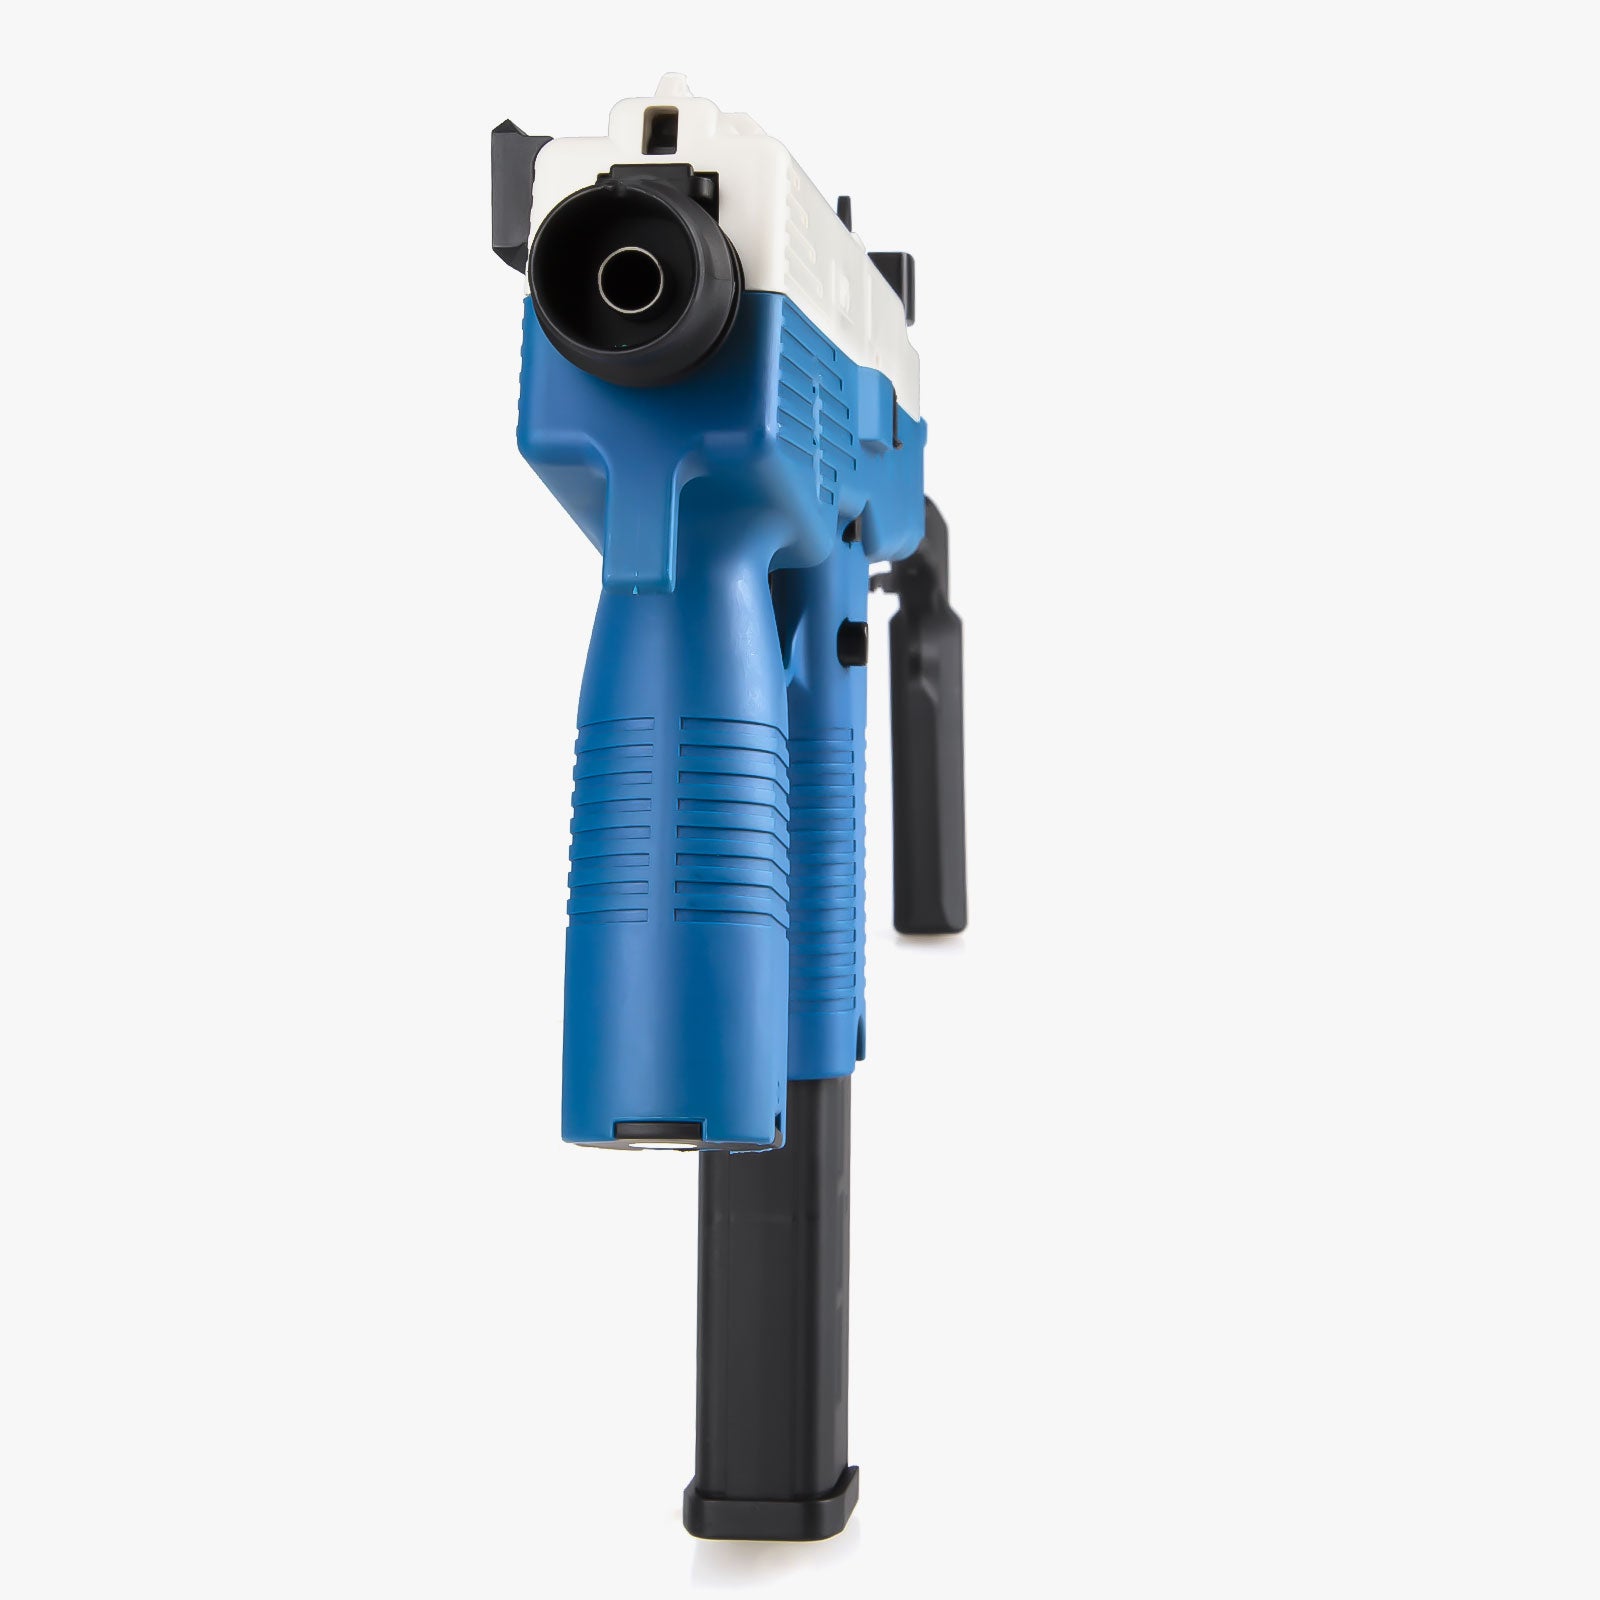 MP9 Toy Gun Blaster